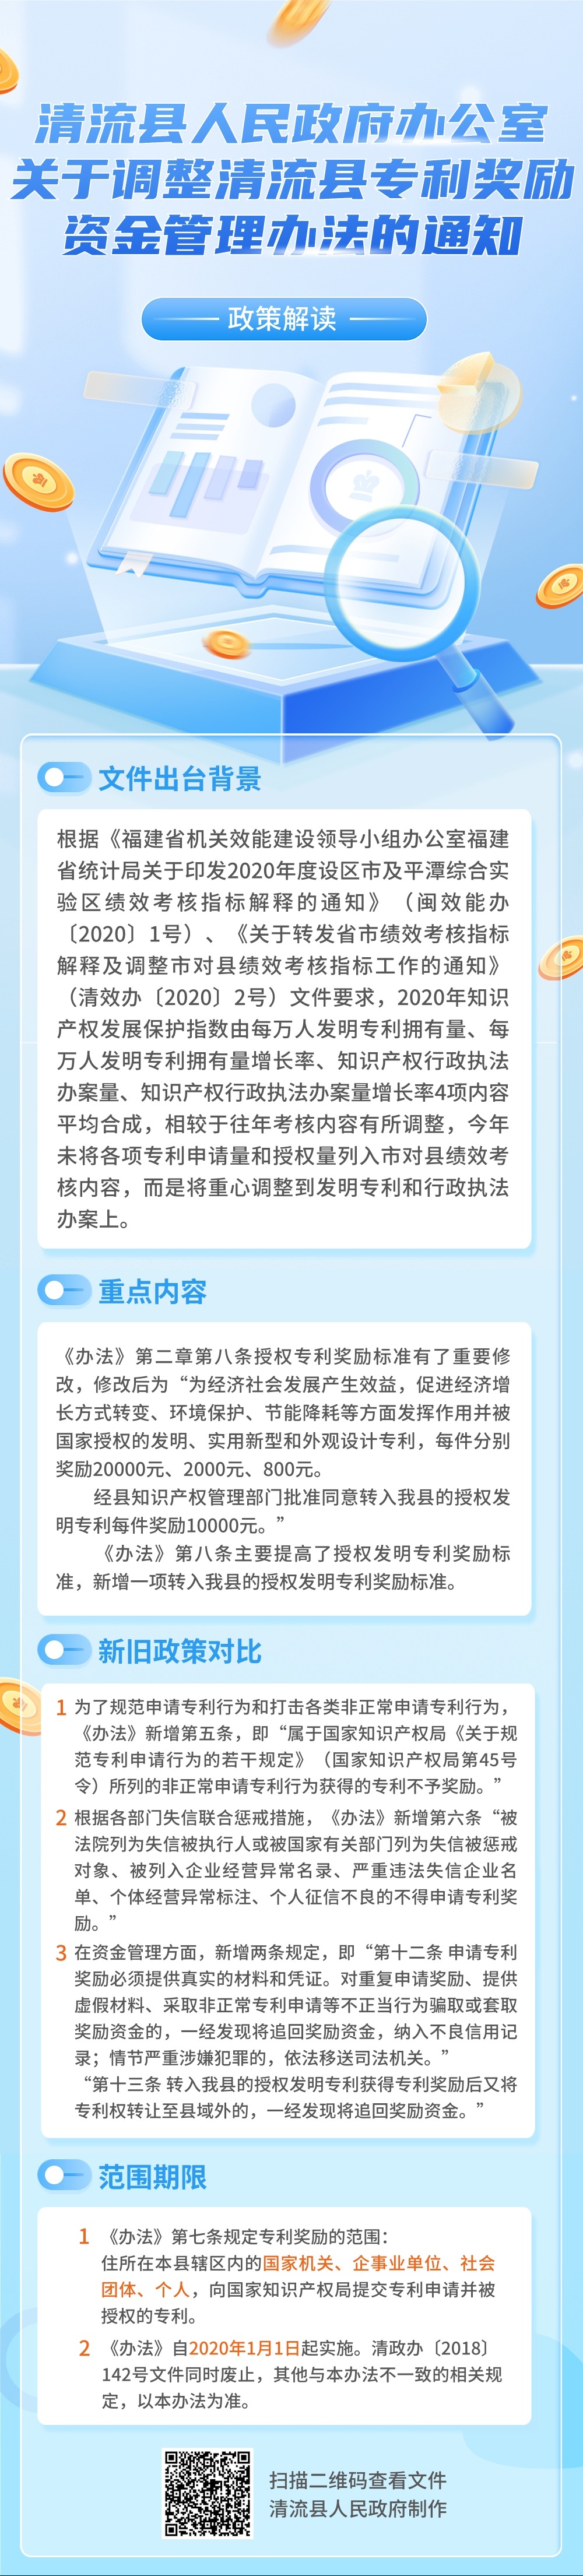 关于《清流县人民政府办公室关于调整清流县专利奖励资金管理办法的通.jpg